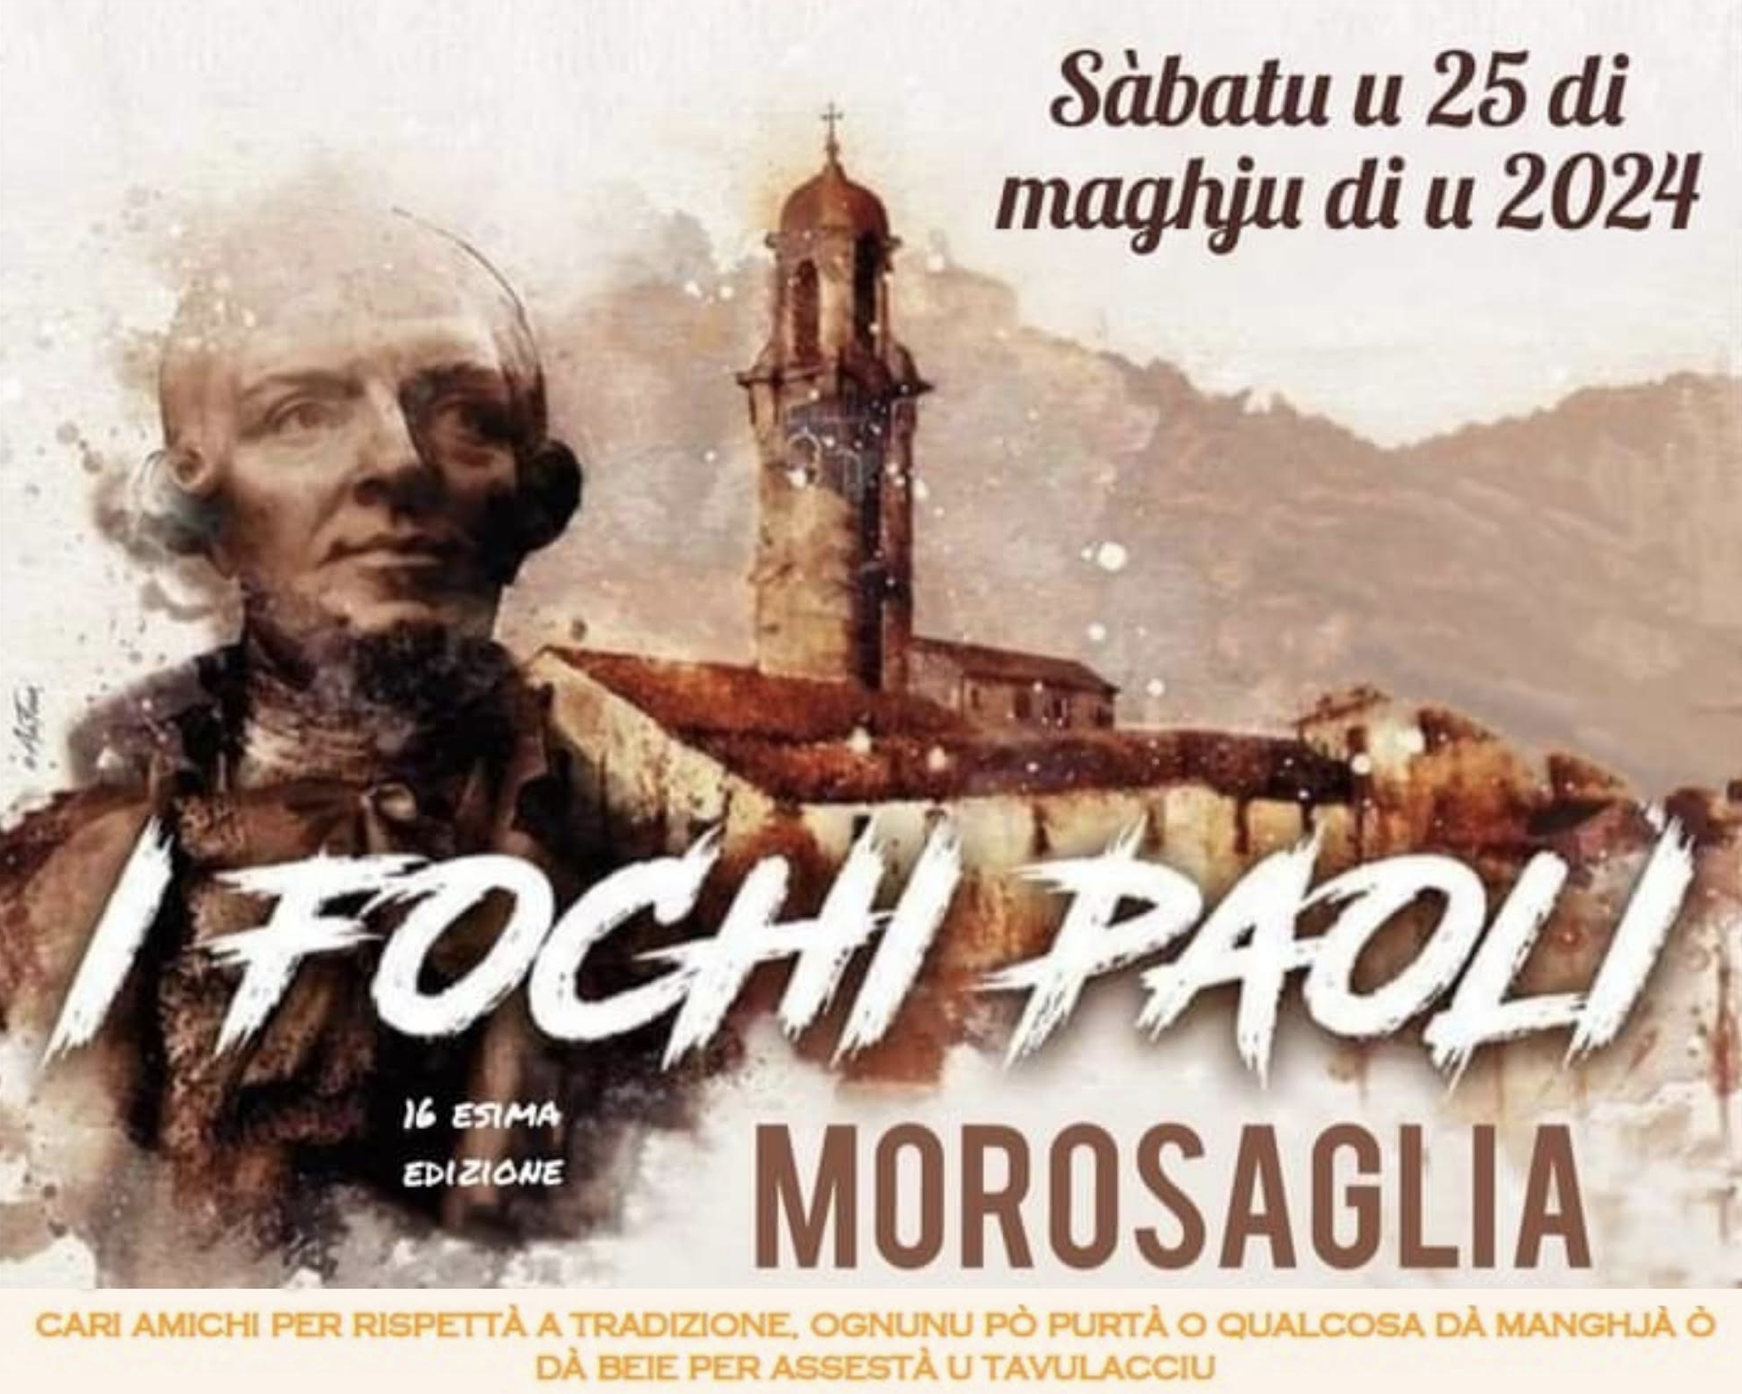 Morosaglia célèbre la 16ème édition de i fochi Paoli ce 25 mai